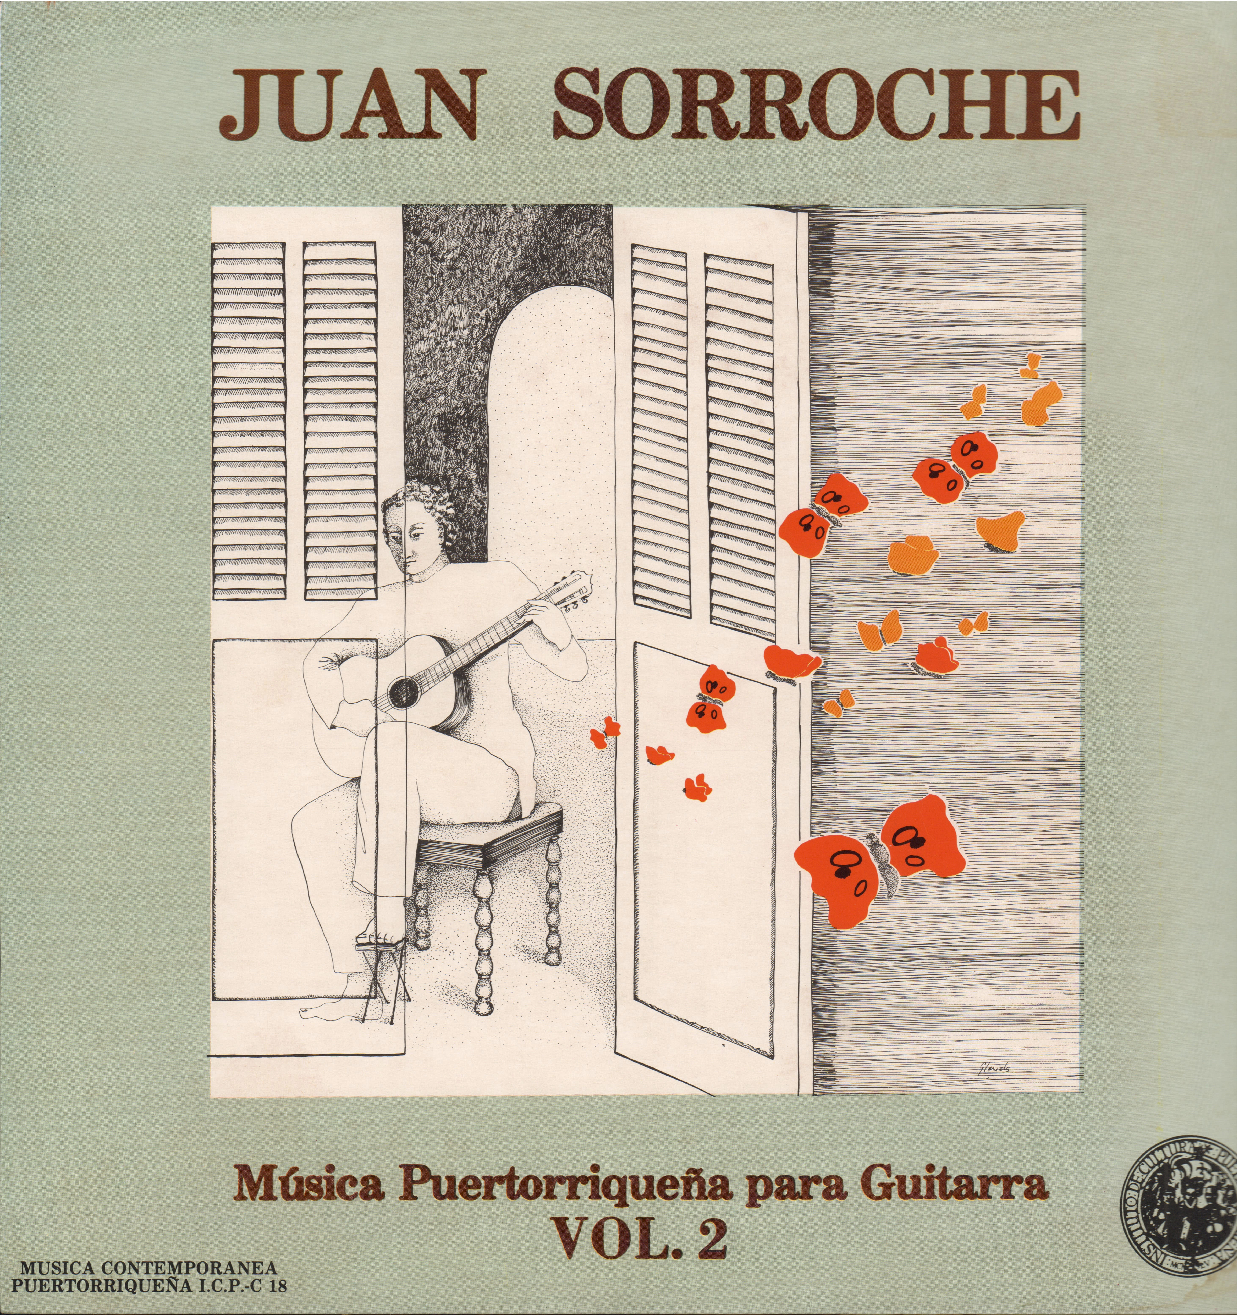 Música Puertorriqueña para Guitarra Vol. 2 - Interpreta Juan Sorroche